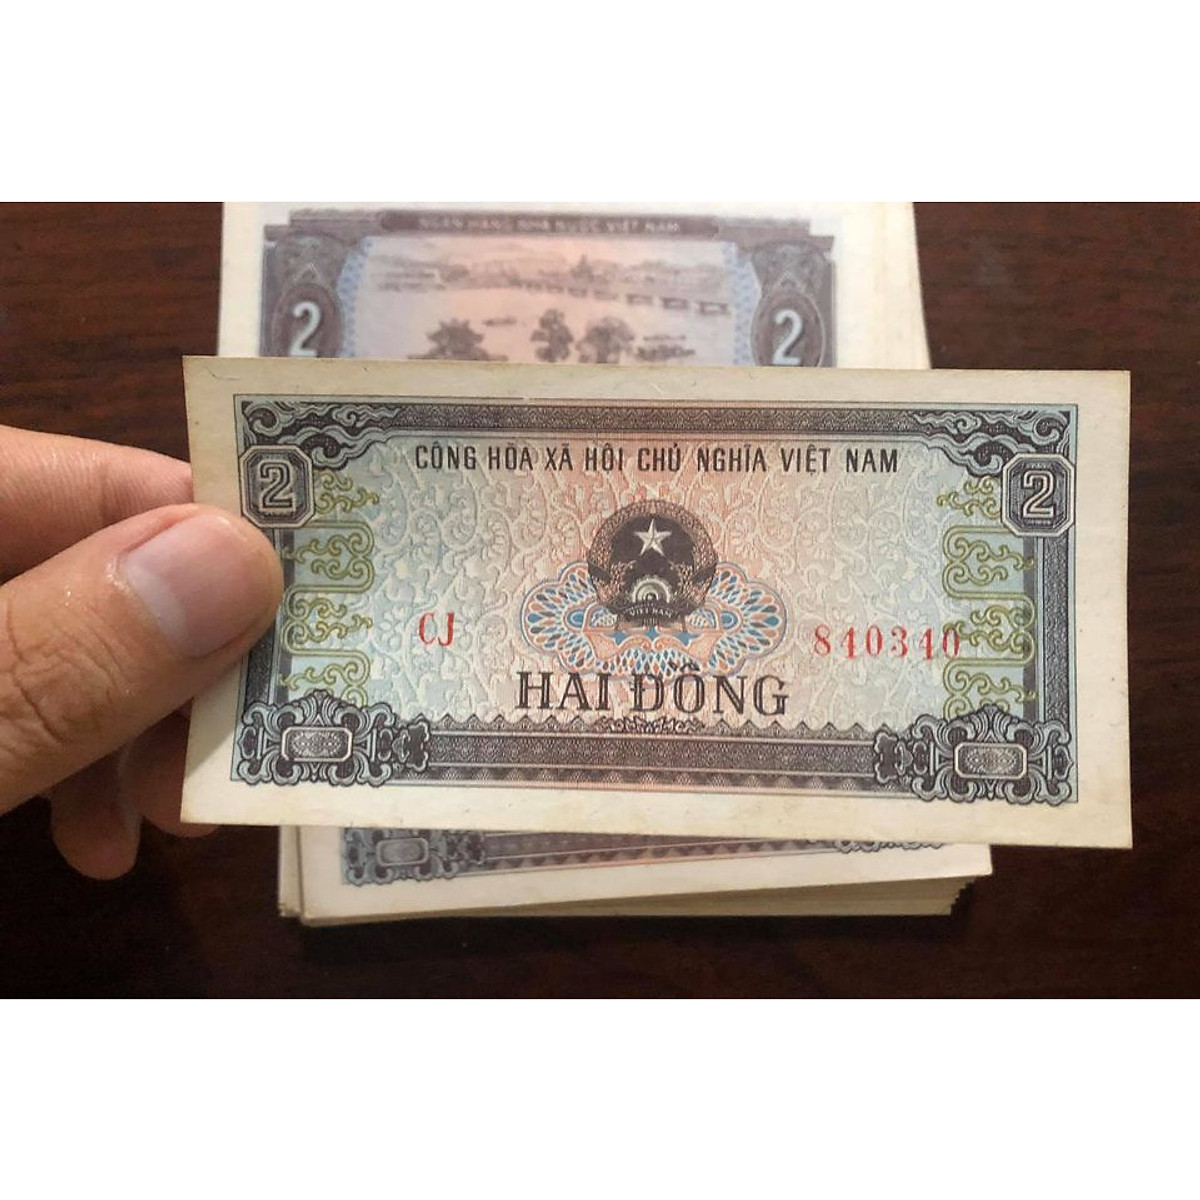 01 tờ tiền 2 đồng Việt Nam bao cấp, tặng kèm bao nilong bảo quản - Chất lượng như hình, Tiền xưa thật 100%